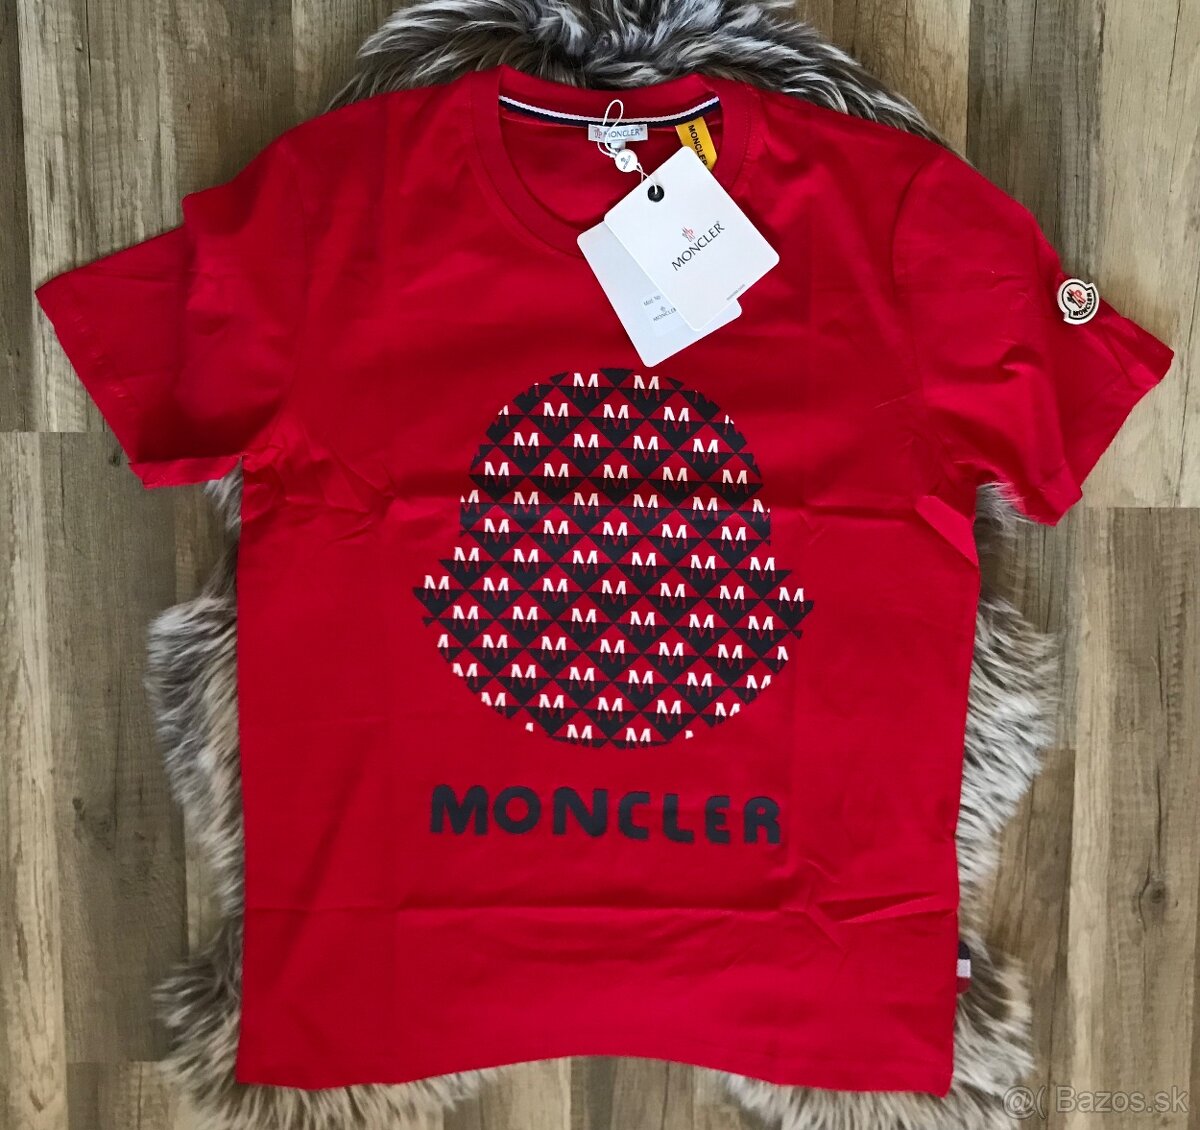 Panske moncler tričko XL